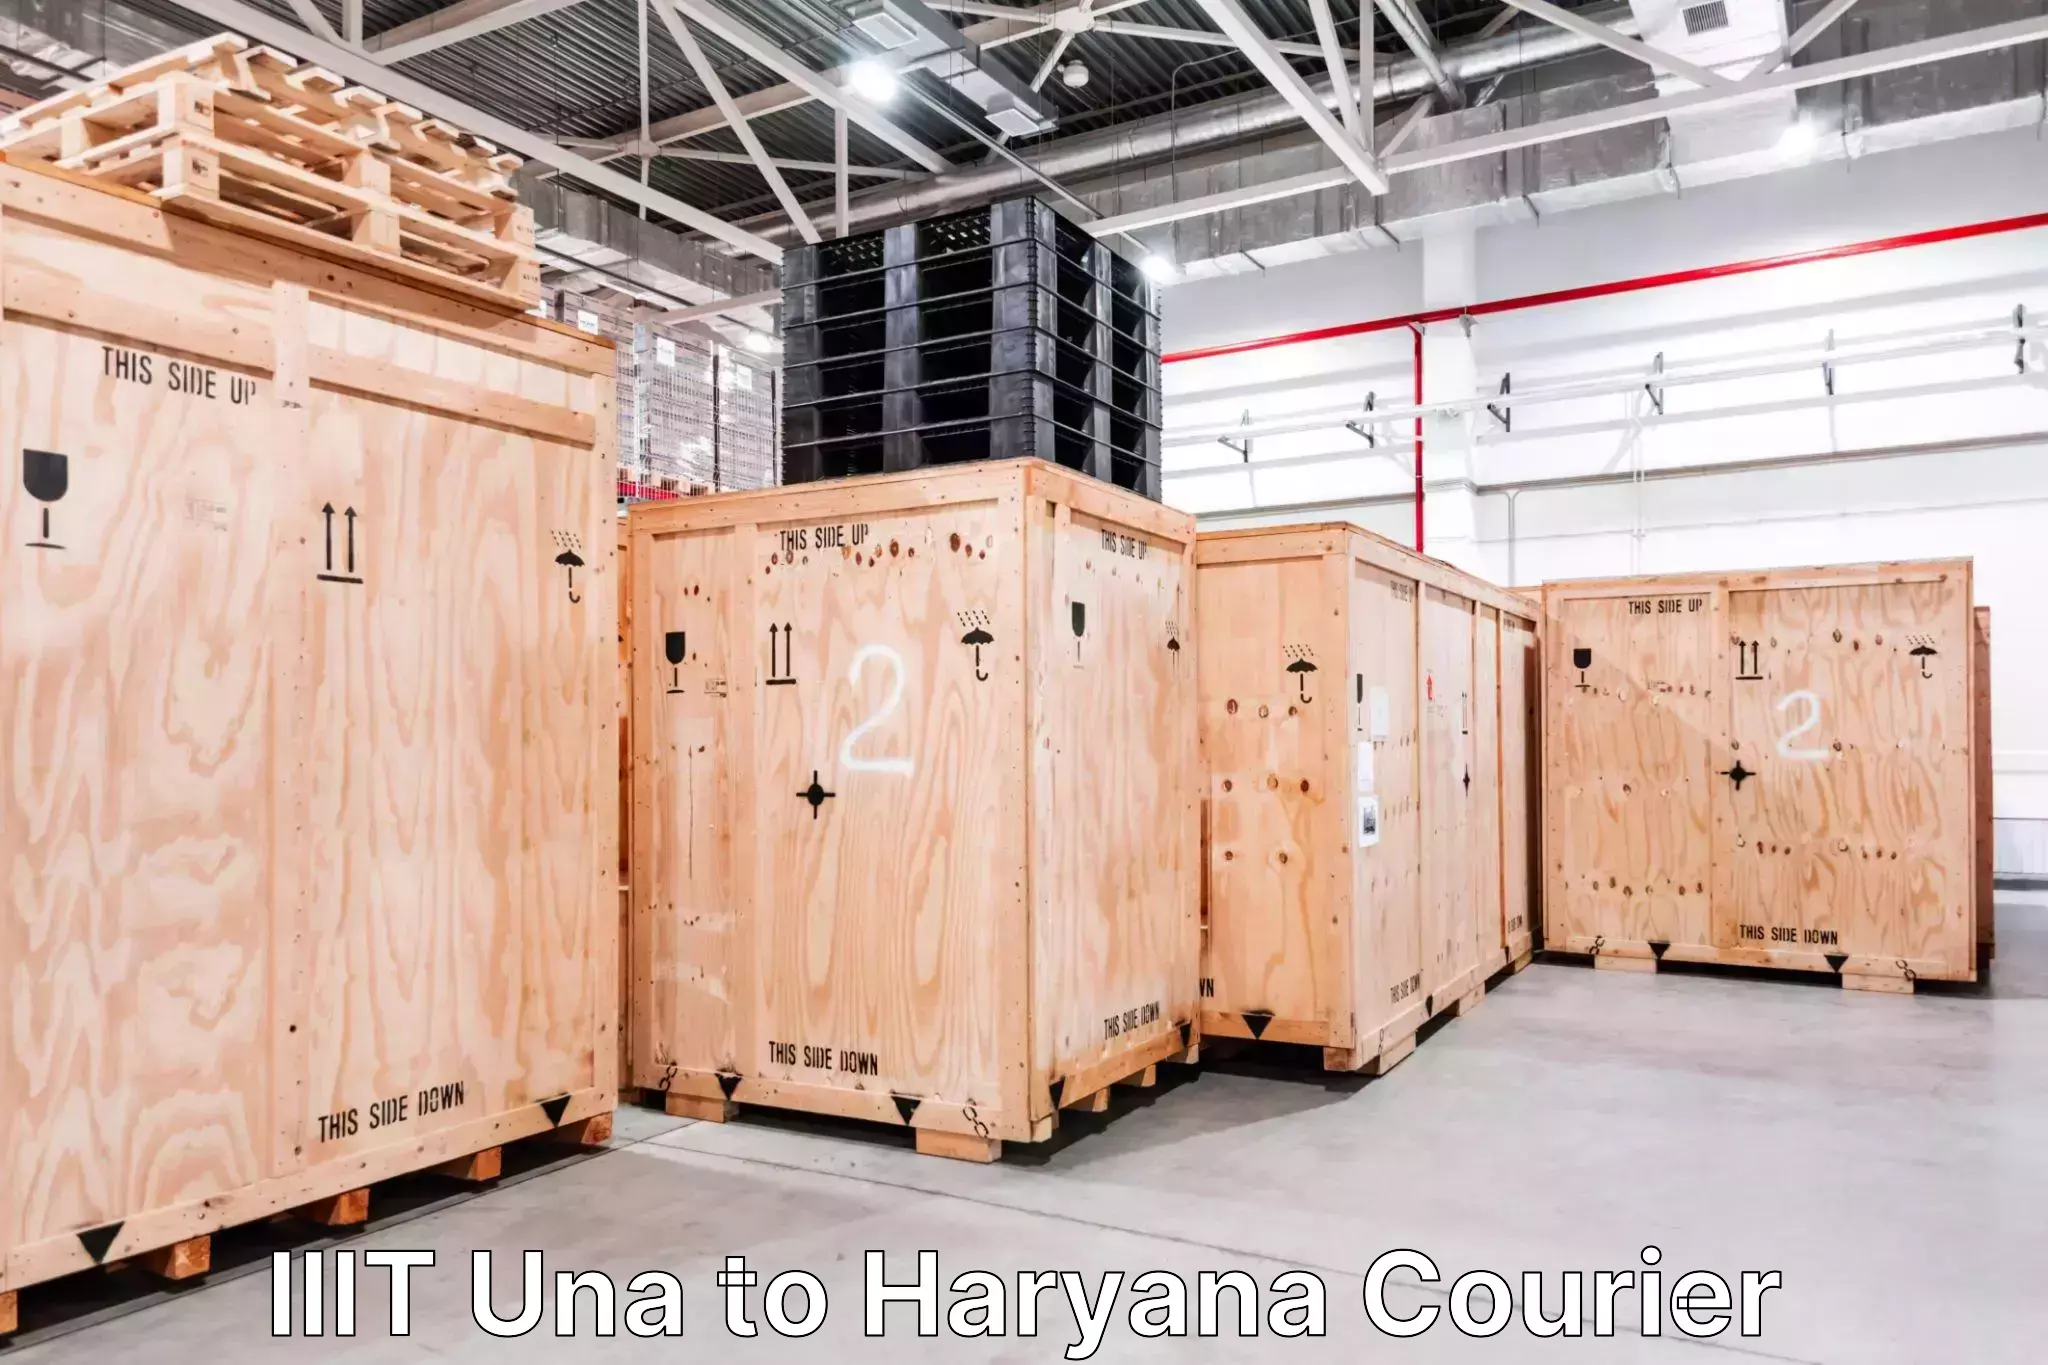 Automated luggage transport IIIT Una to Gohana